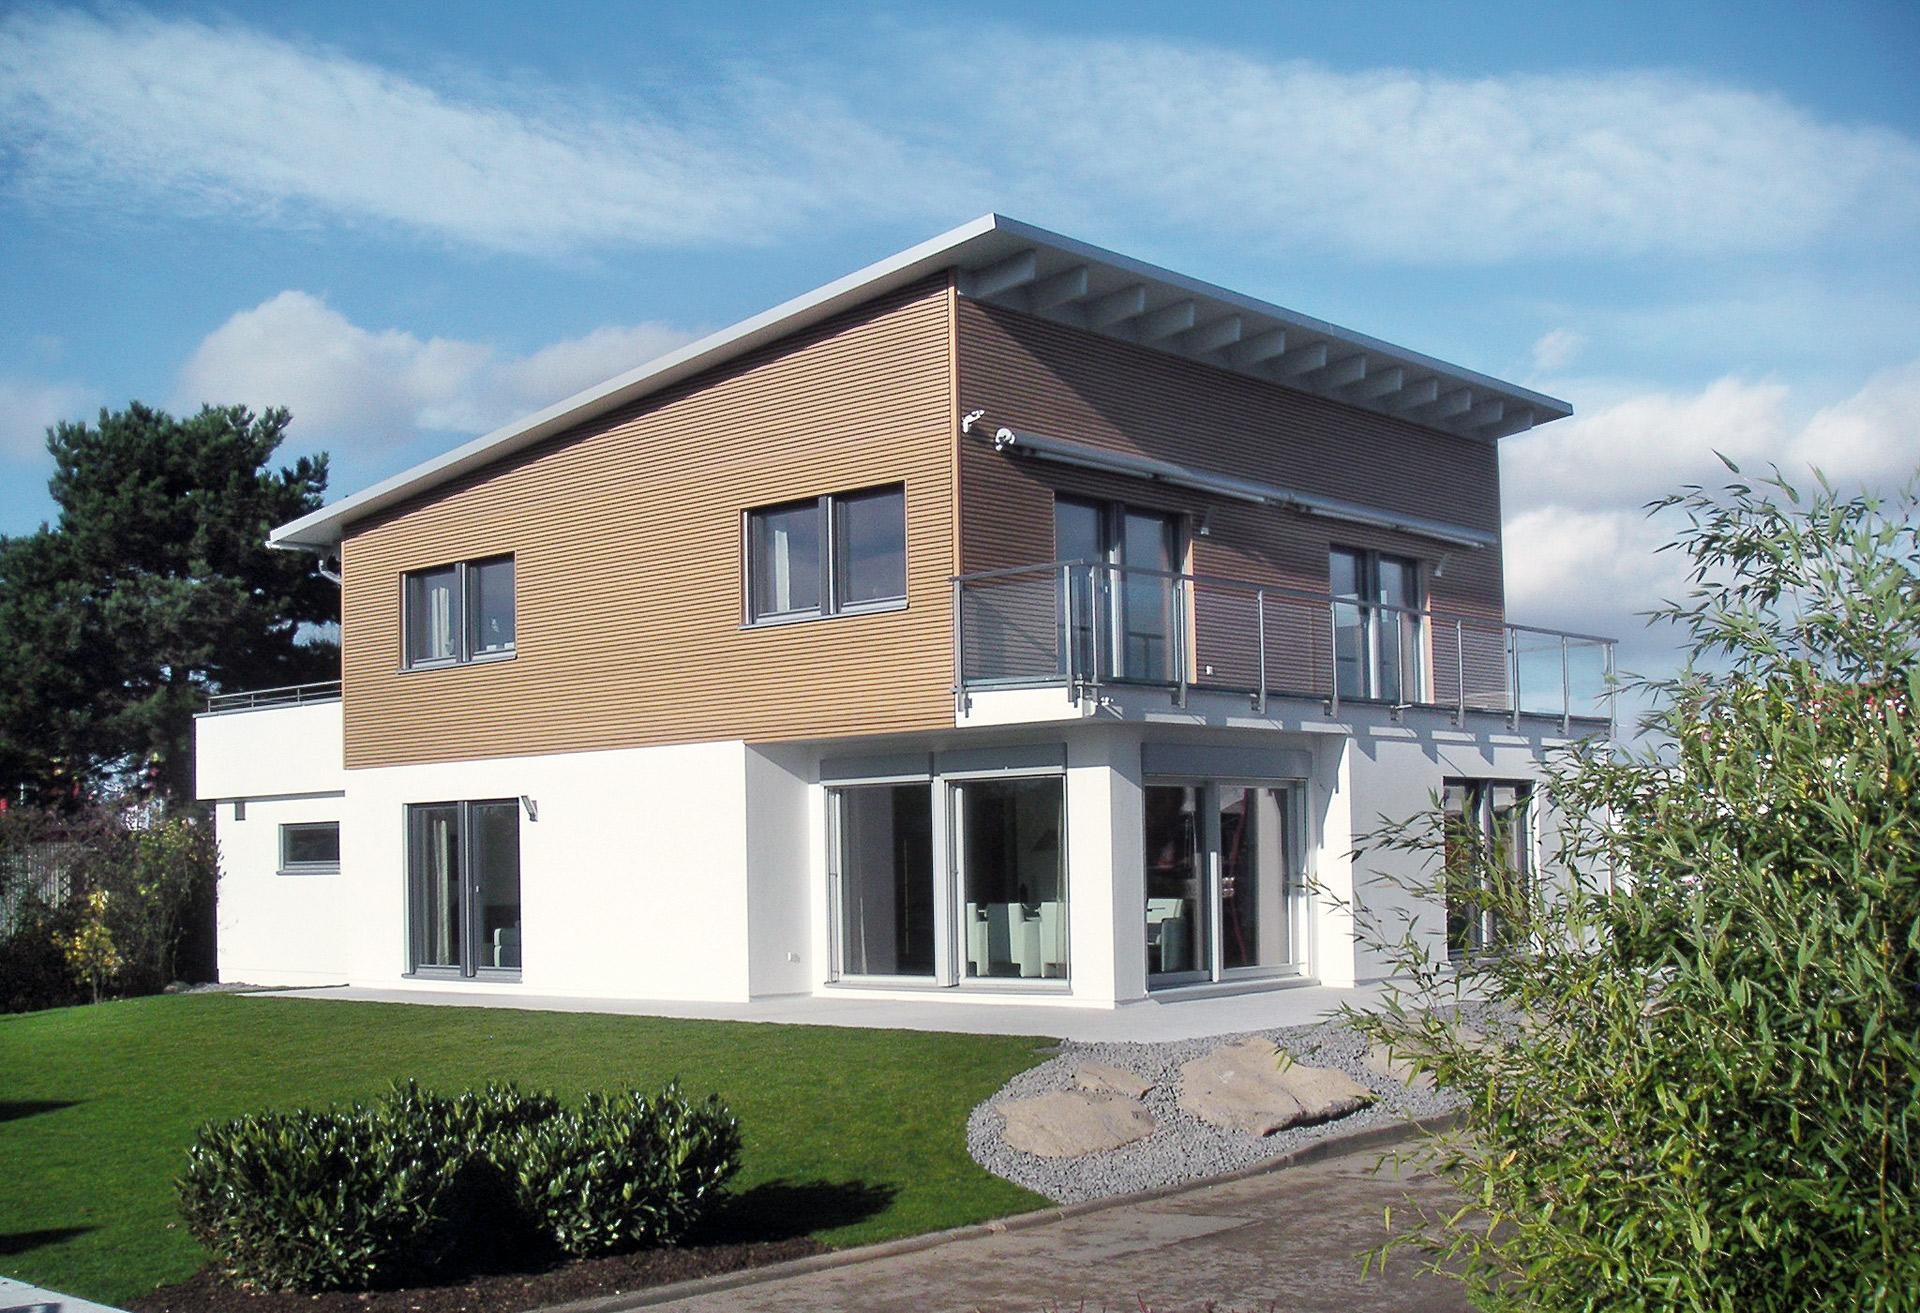 Maison individuelle dans le style Bauhaus avec toit pentu